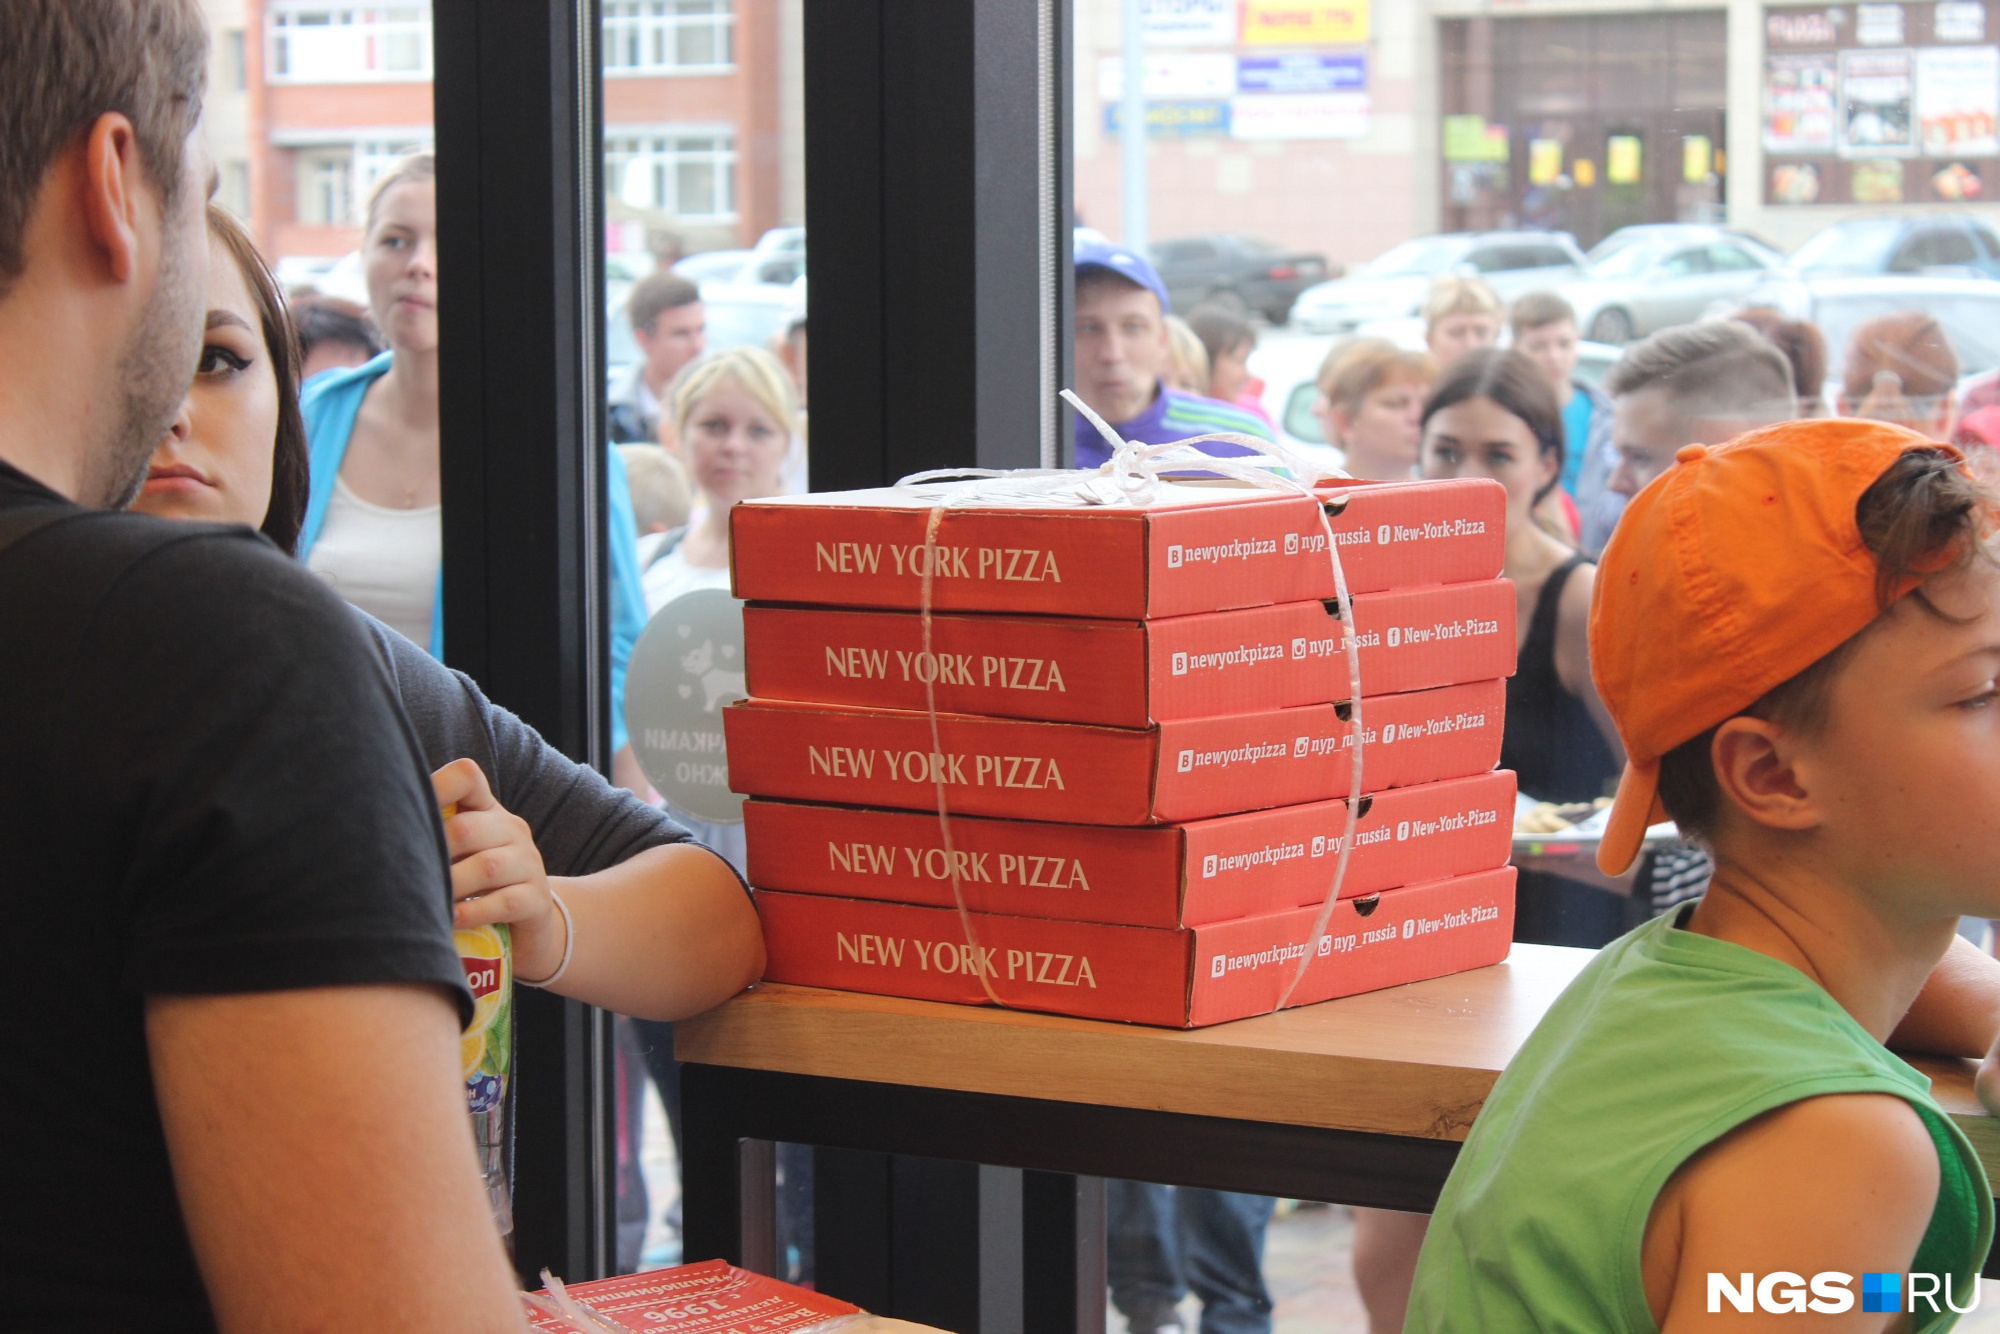 Поначалу заведение готово было продавать по пять пицц в одни руки, но из-за большого количества желающих вынуждено было сократить норму до двух